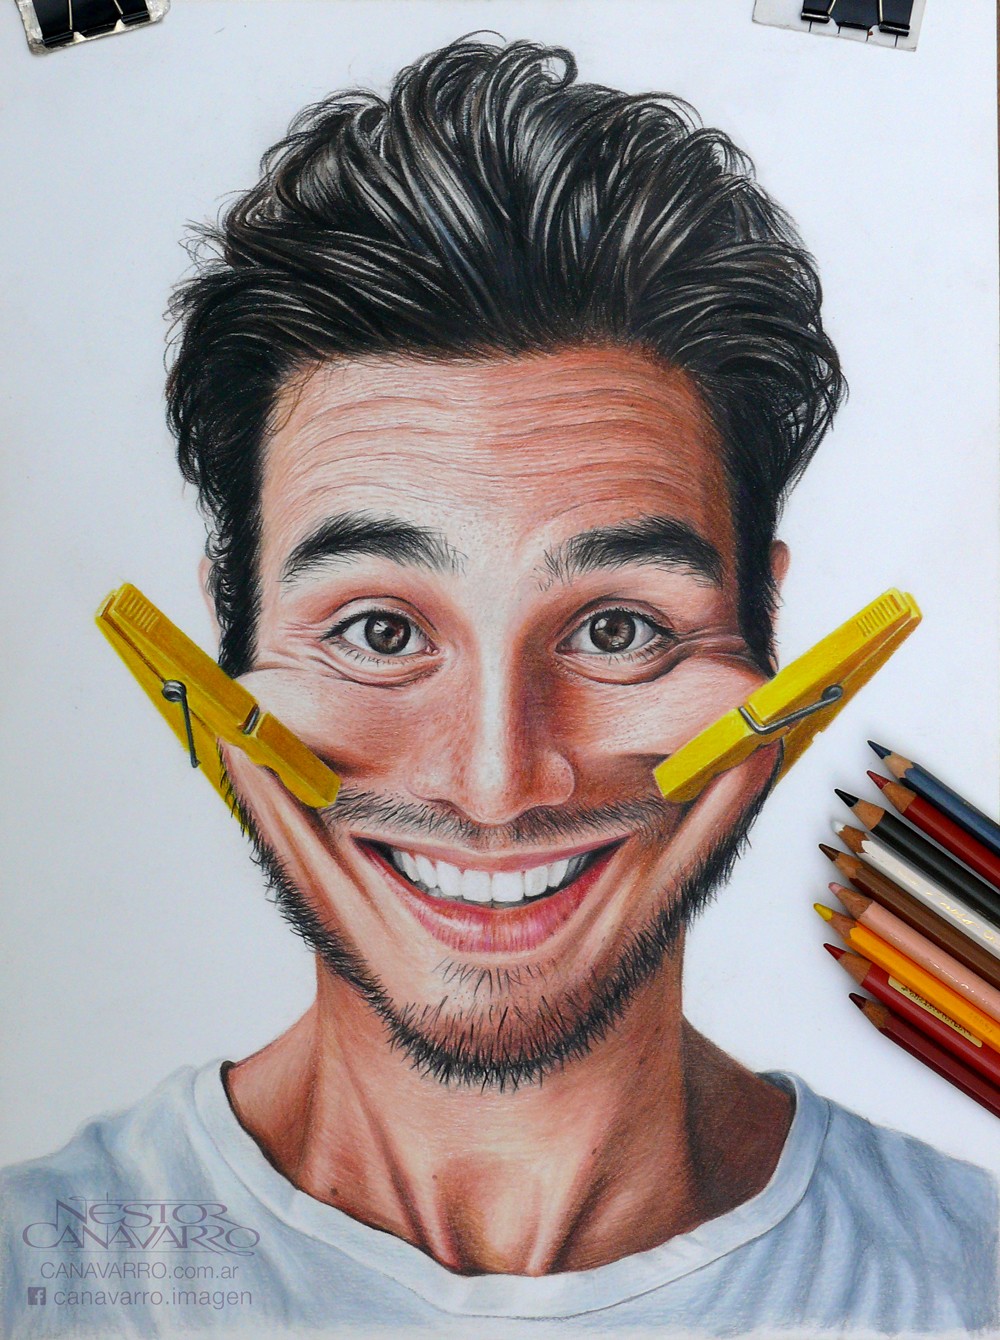 Гиперреалистичные портреты карандашами от Нестора Канаварро